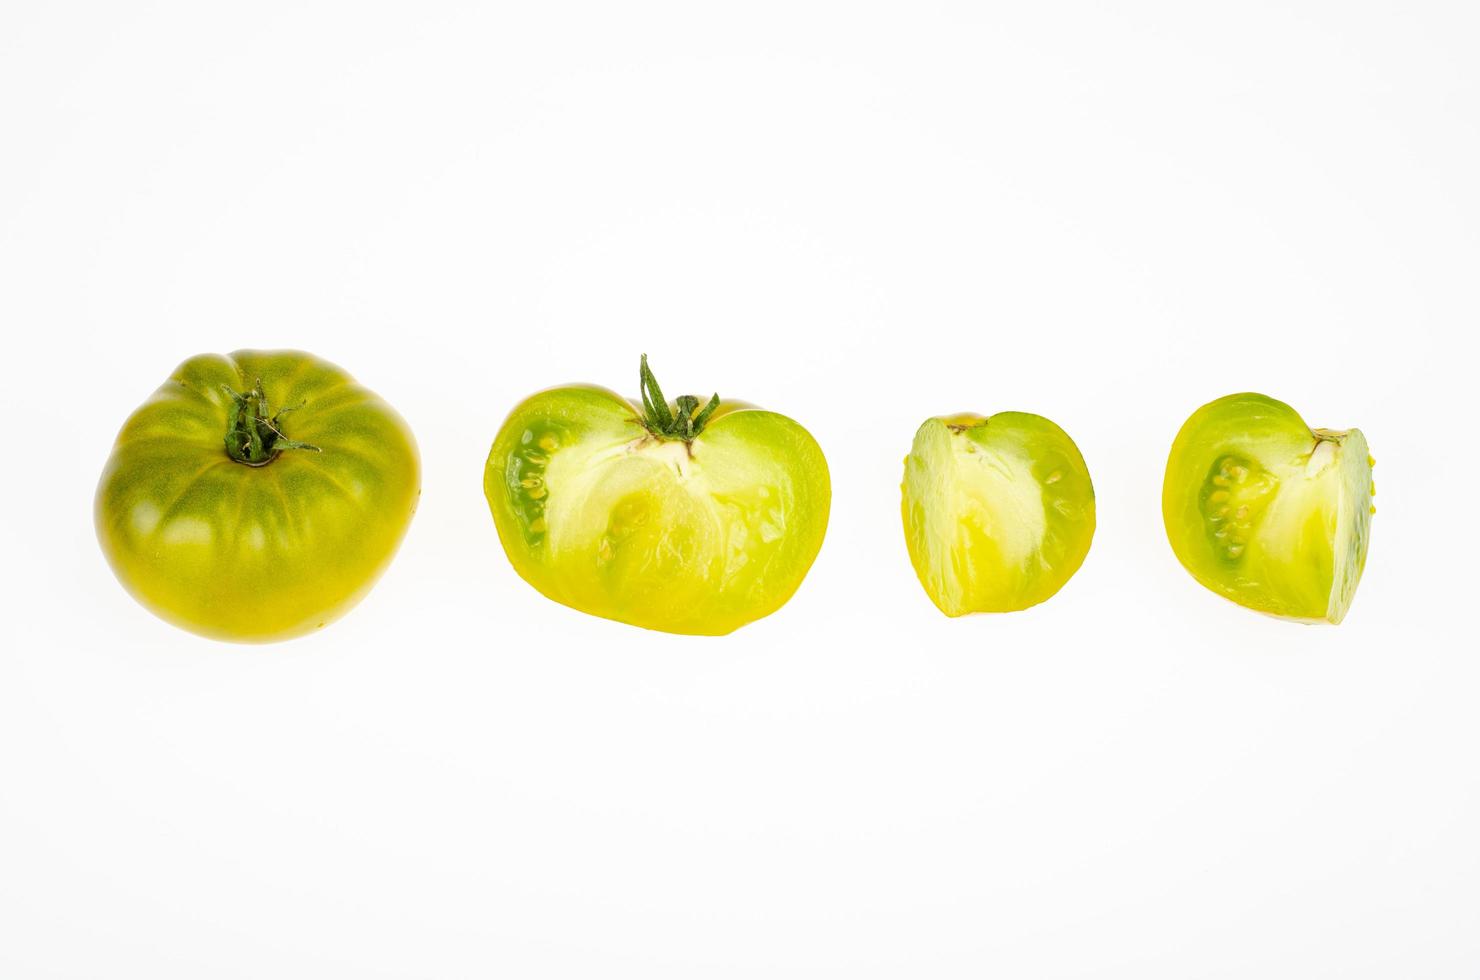 fruits entiers et tranches de couleur jaune-vert de fruits de tomates mûrs, isolés sur fond blanc. photo d'atelier.